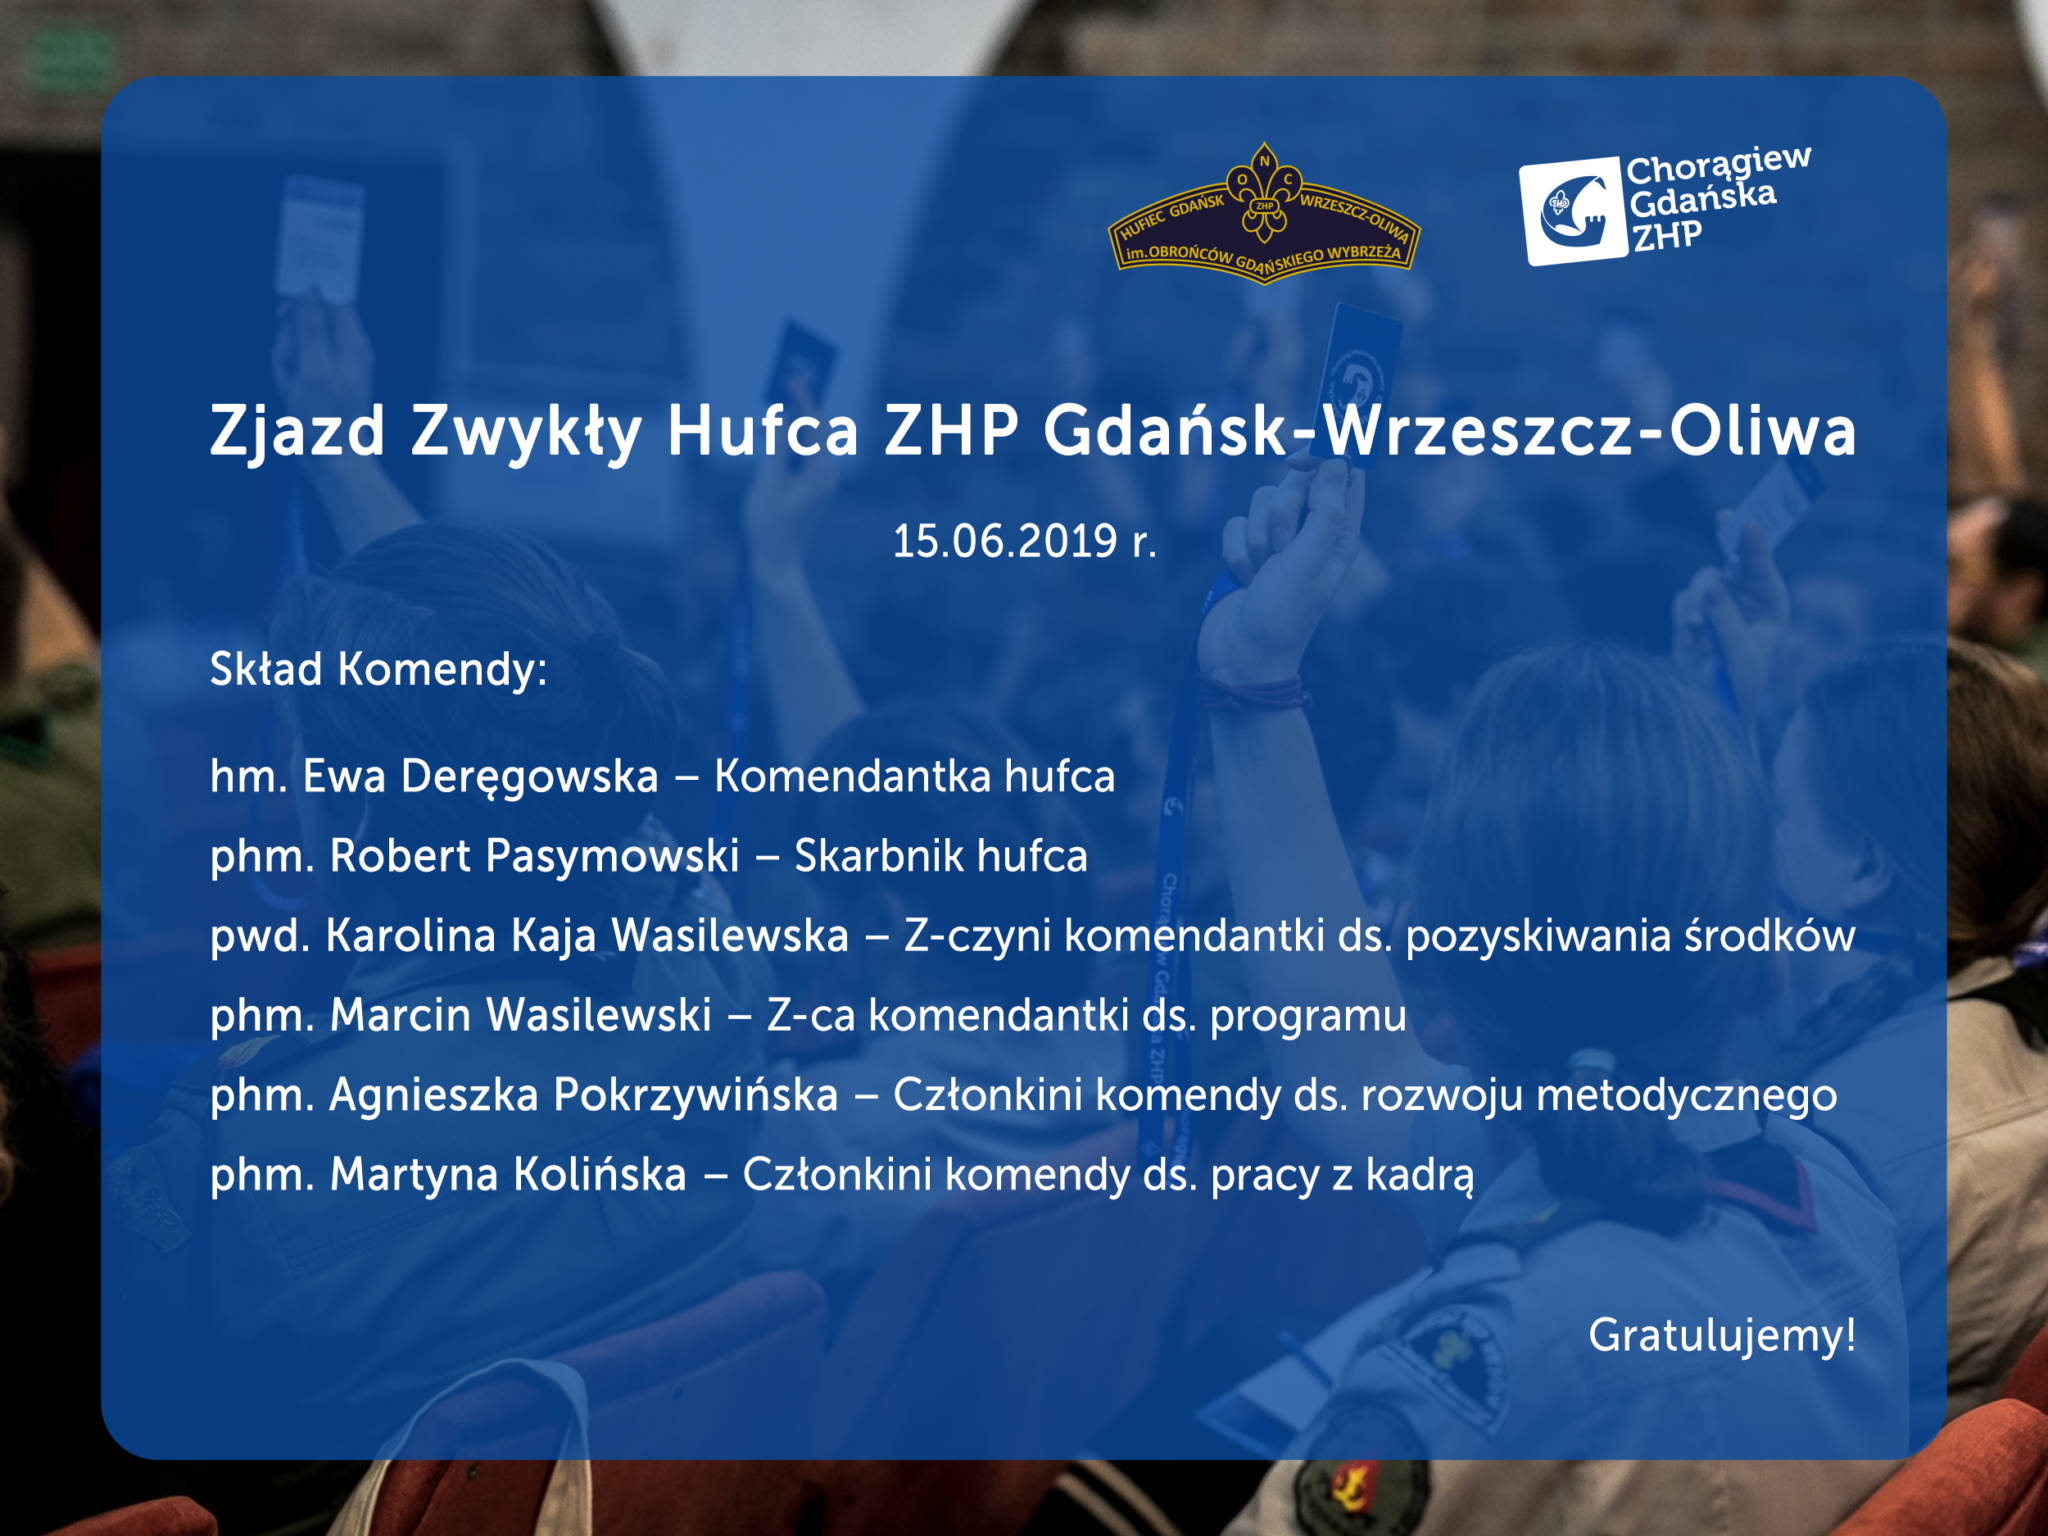 Zjazd Zwykły Hufca Gdańsk-Wrzeszcz-Oliwa